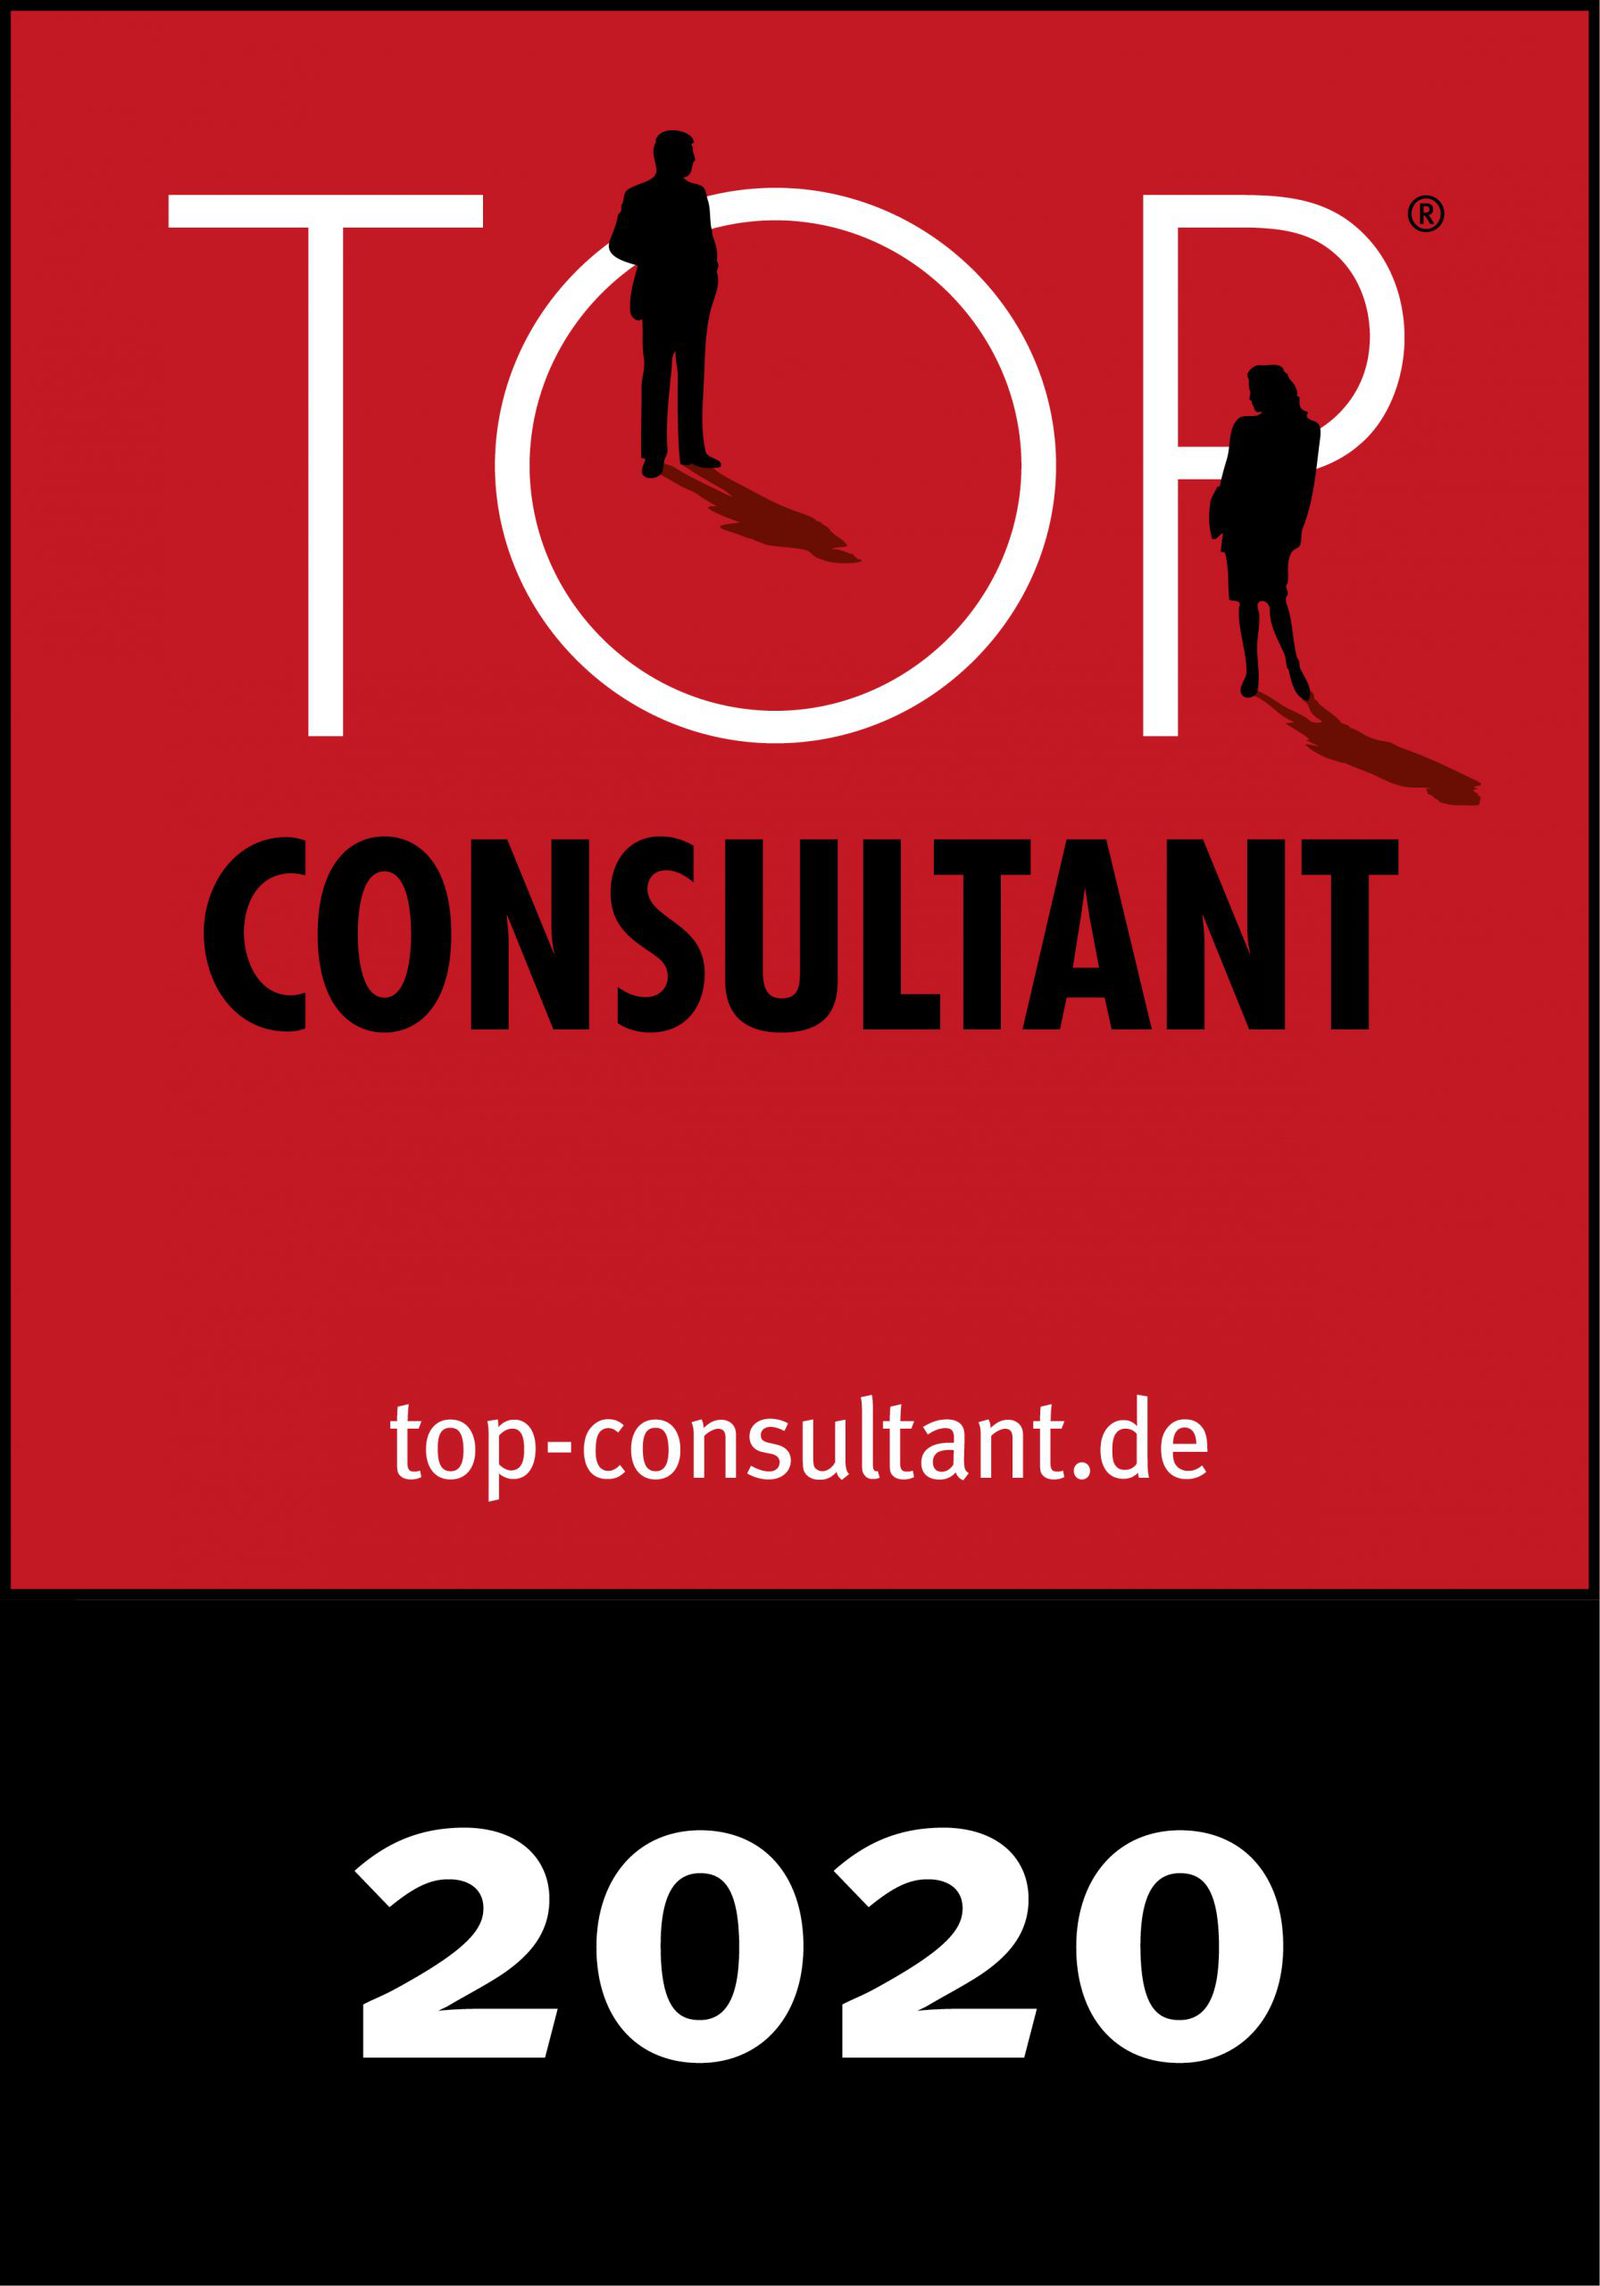 Top consultant 2020